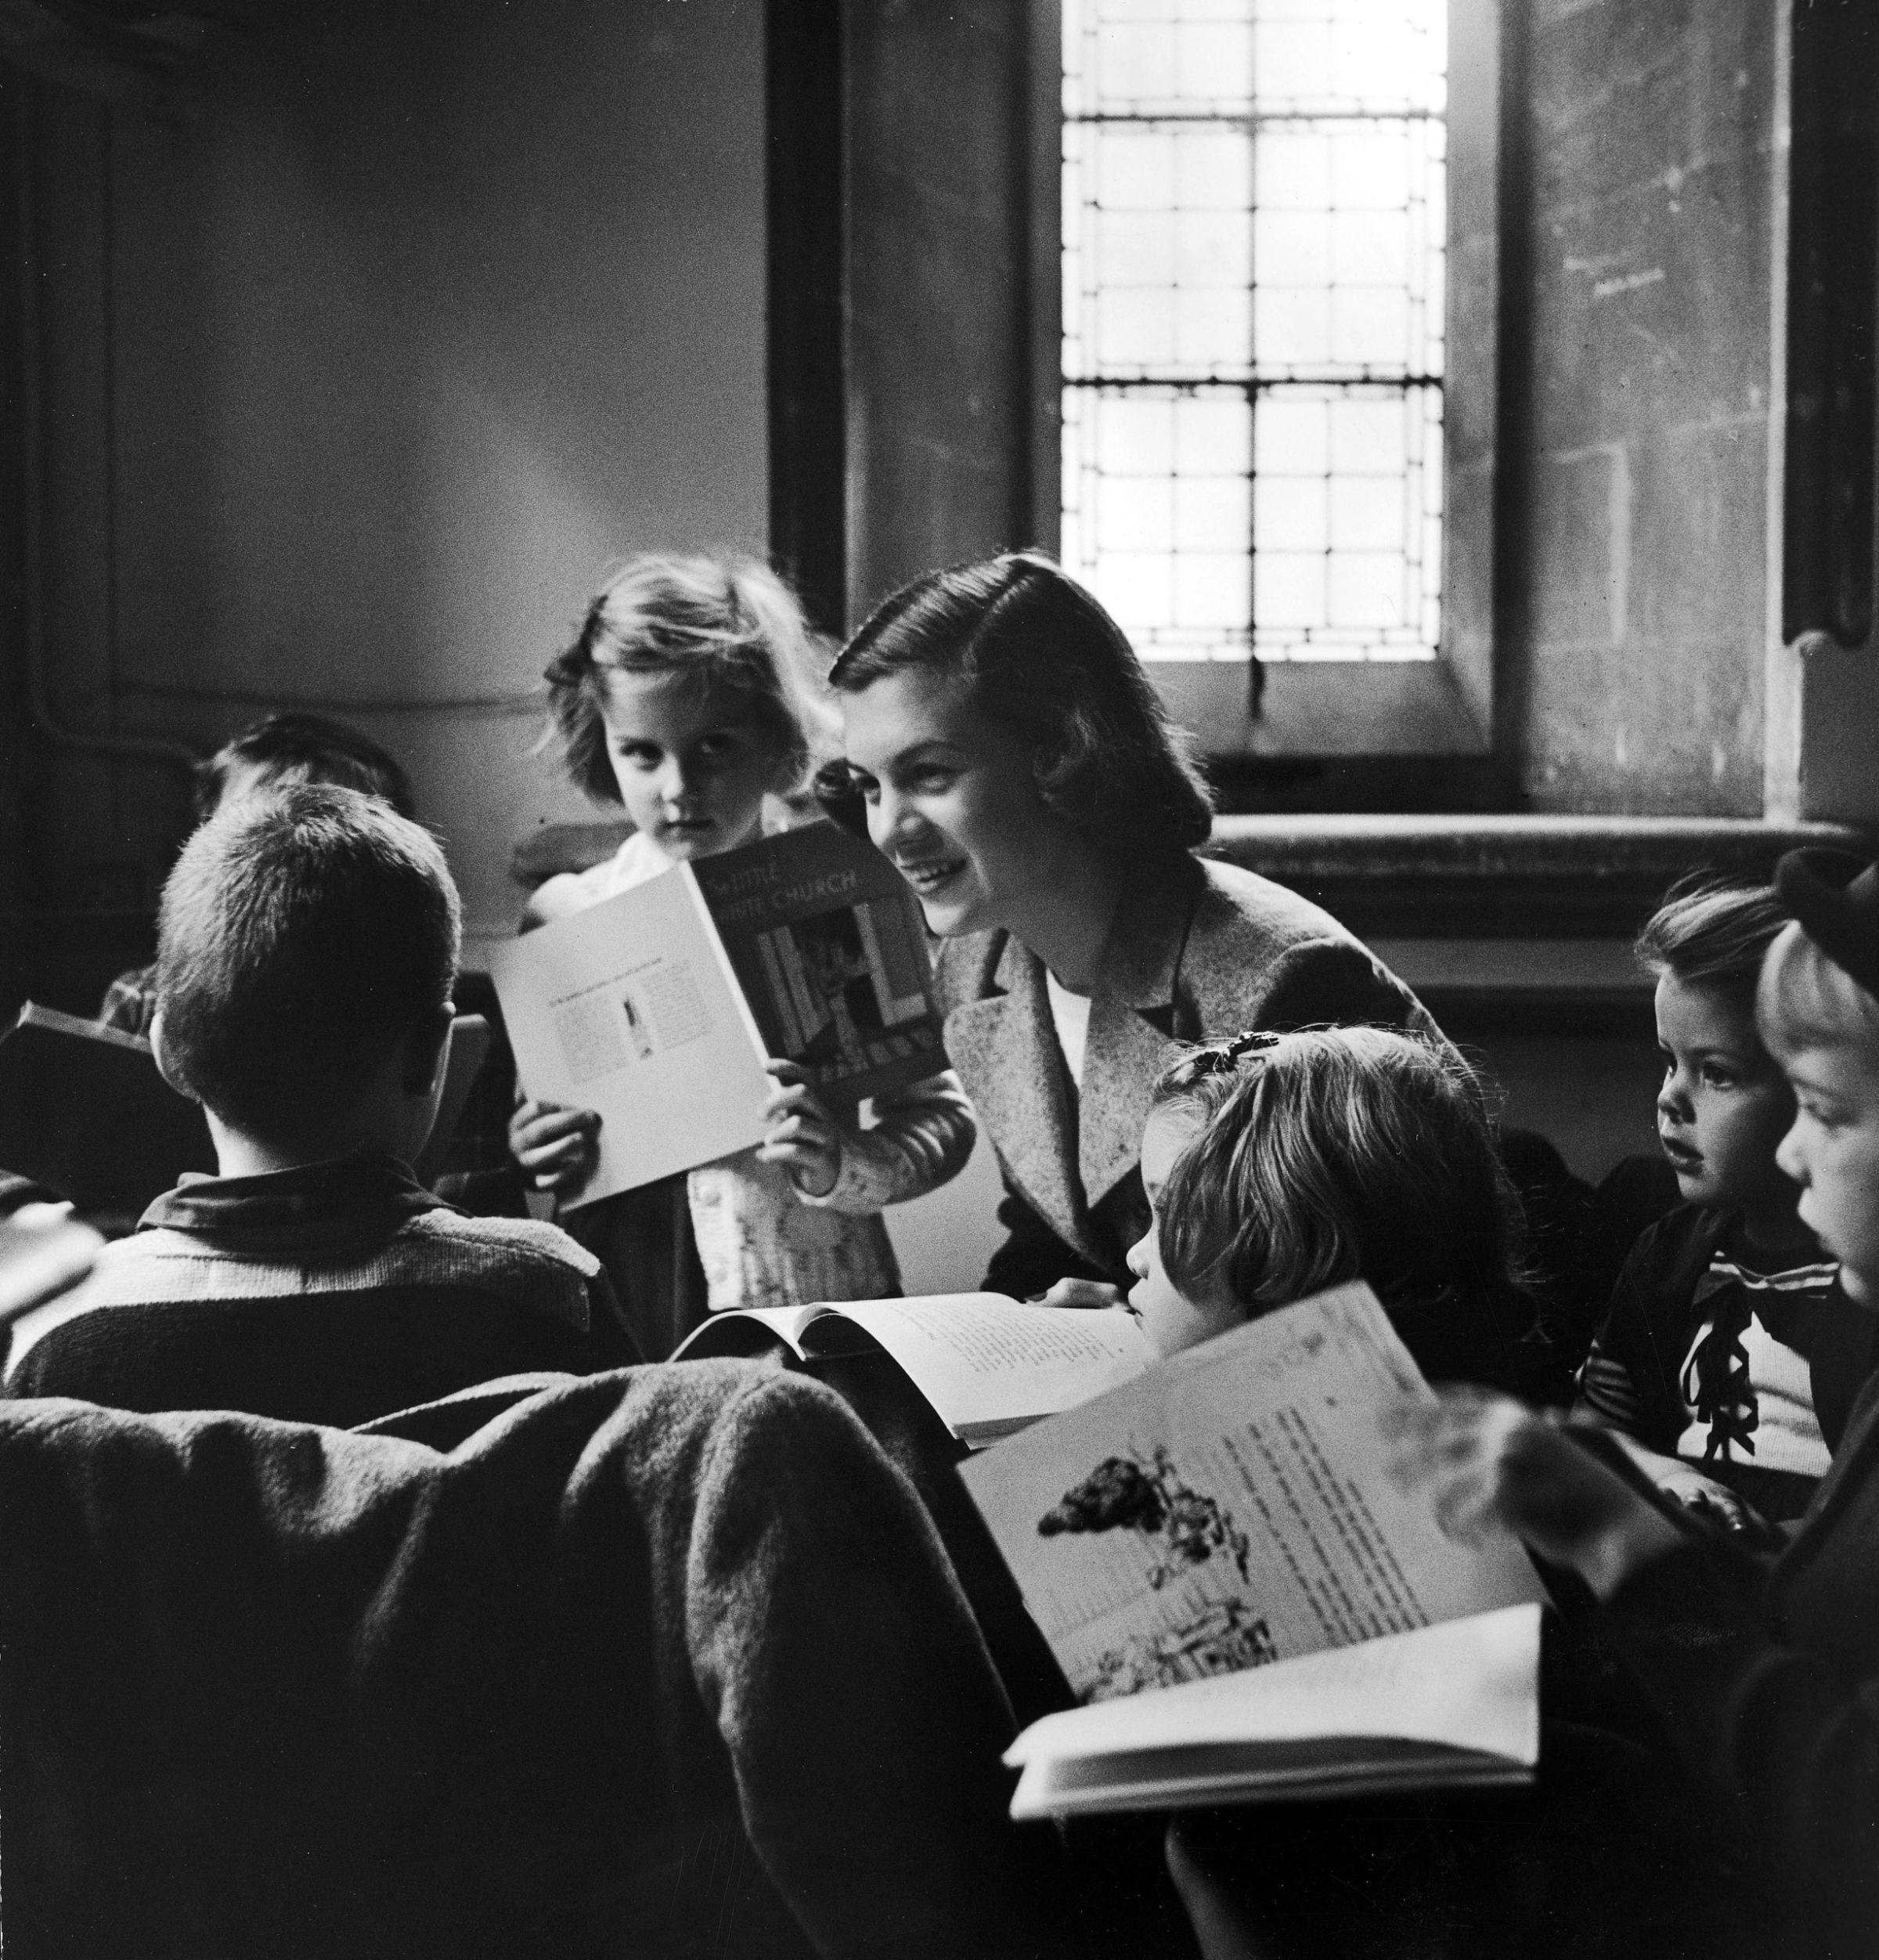 American teens in Paris 1952